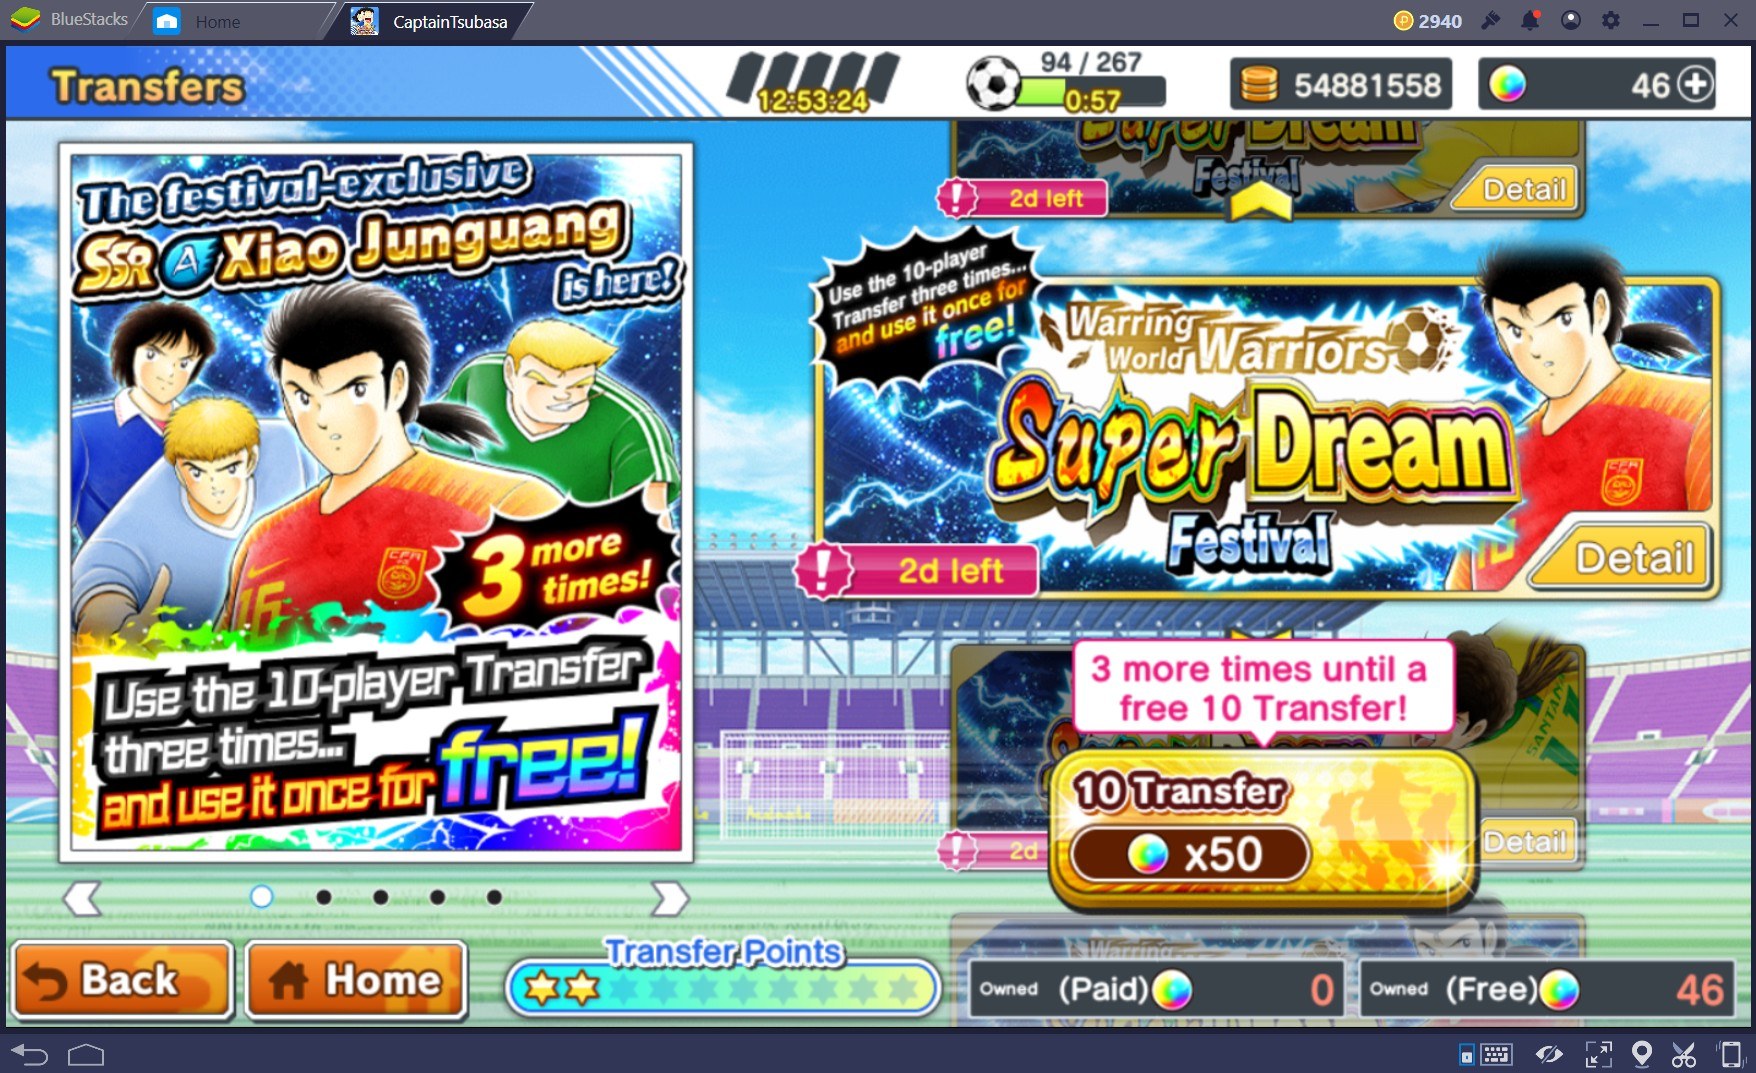 Captain Tsubasa: Dream Team - Khám phá sức mạnh Santana và Xiao Junguang Dreamfest